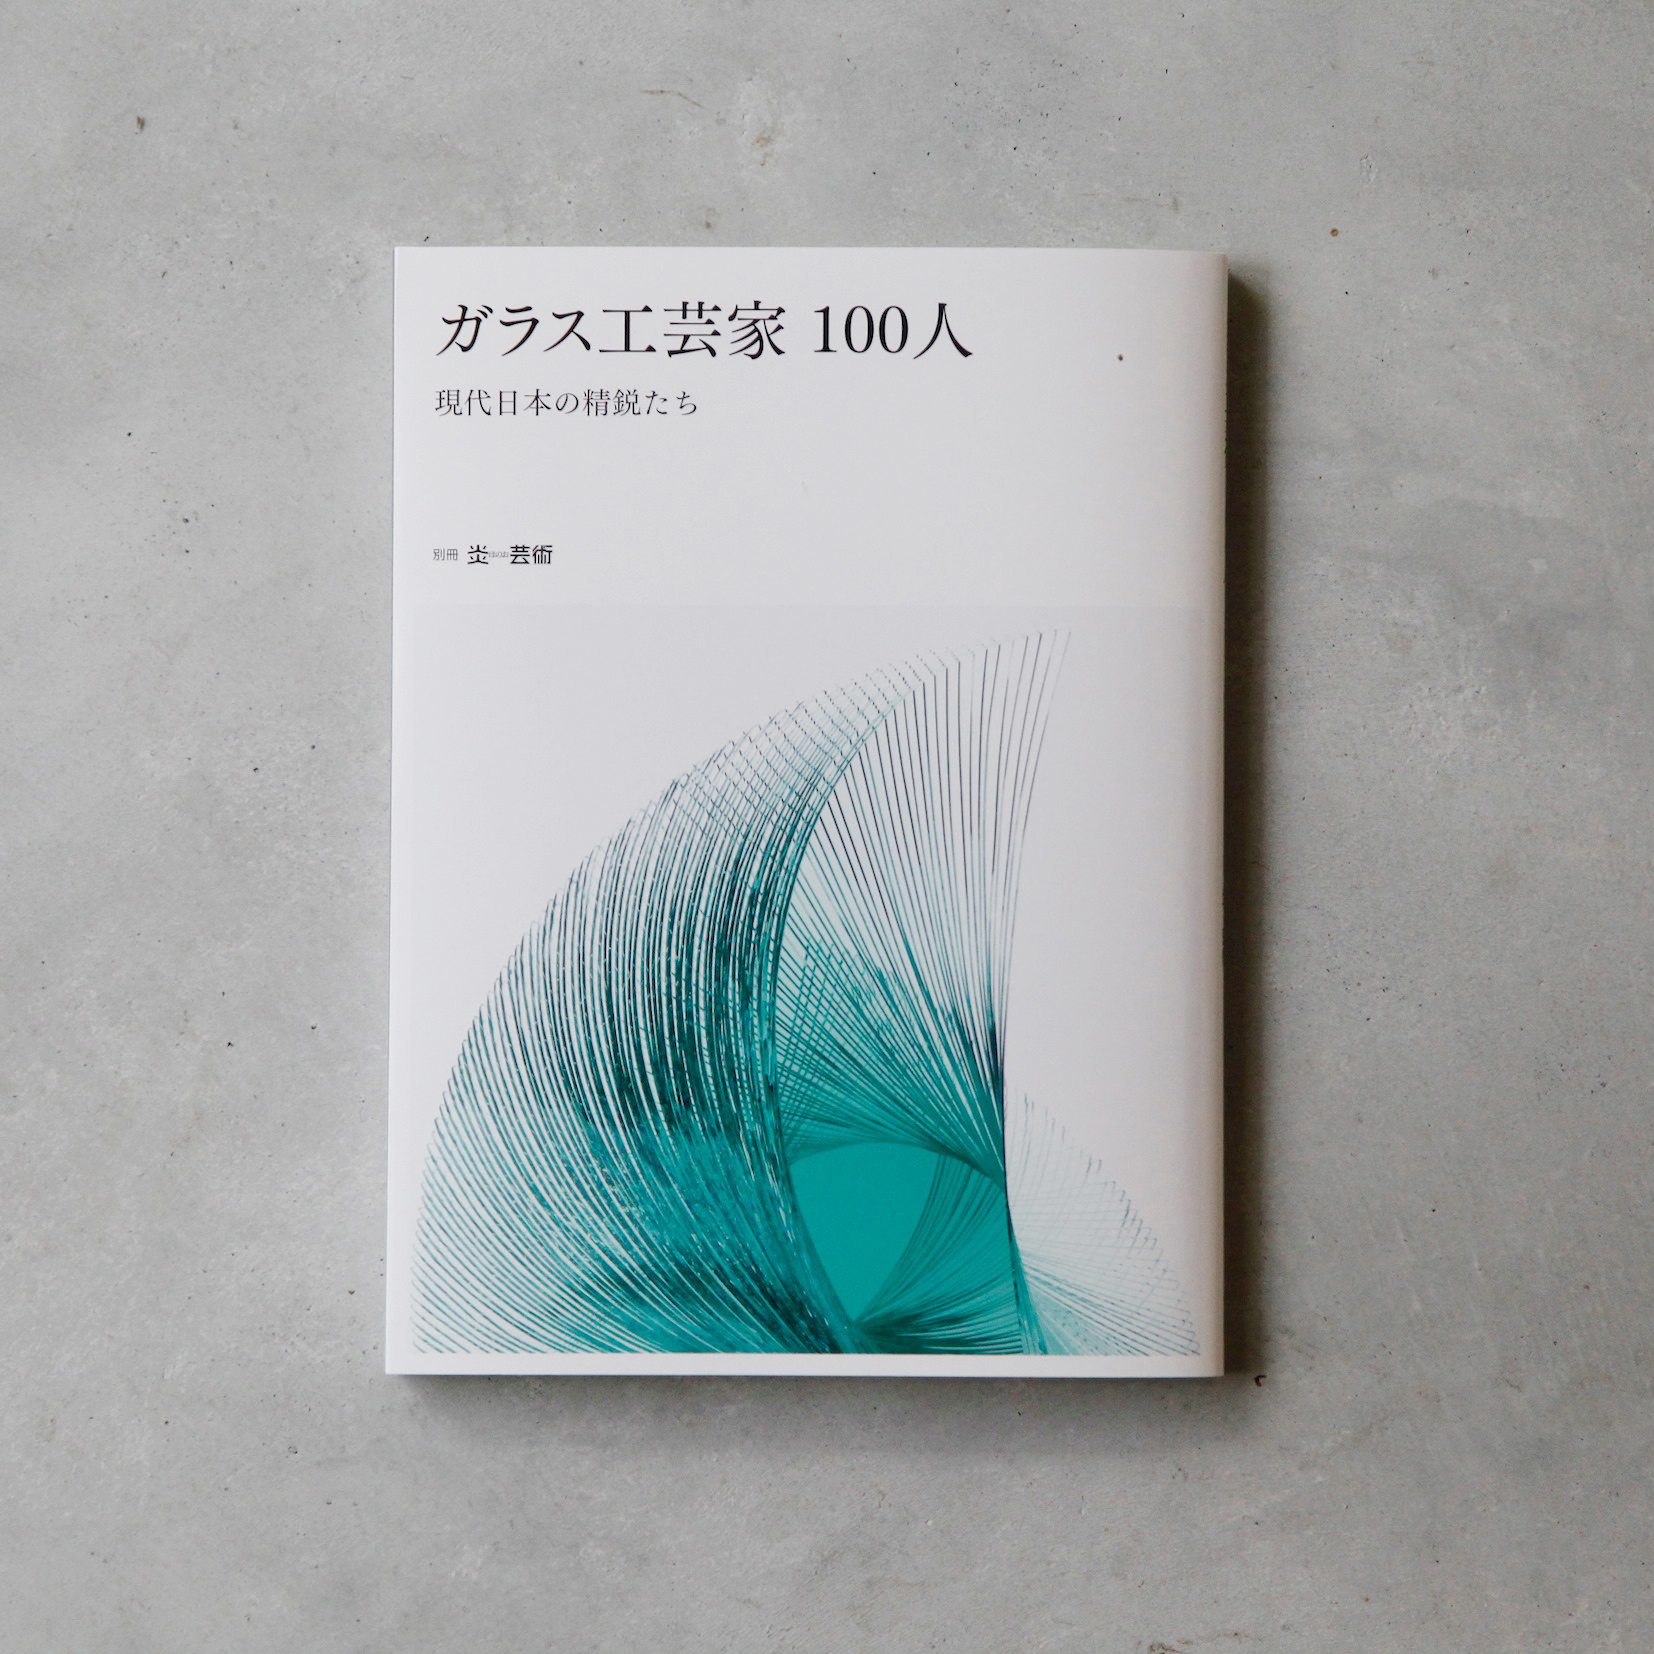 掲載「ガラス工芸家100人現代日本の精鋭たち」